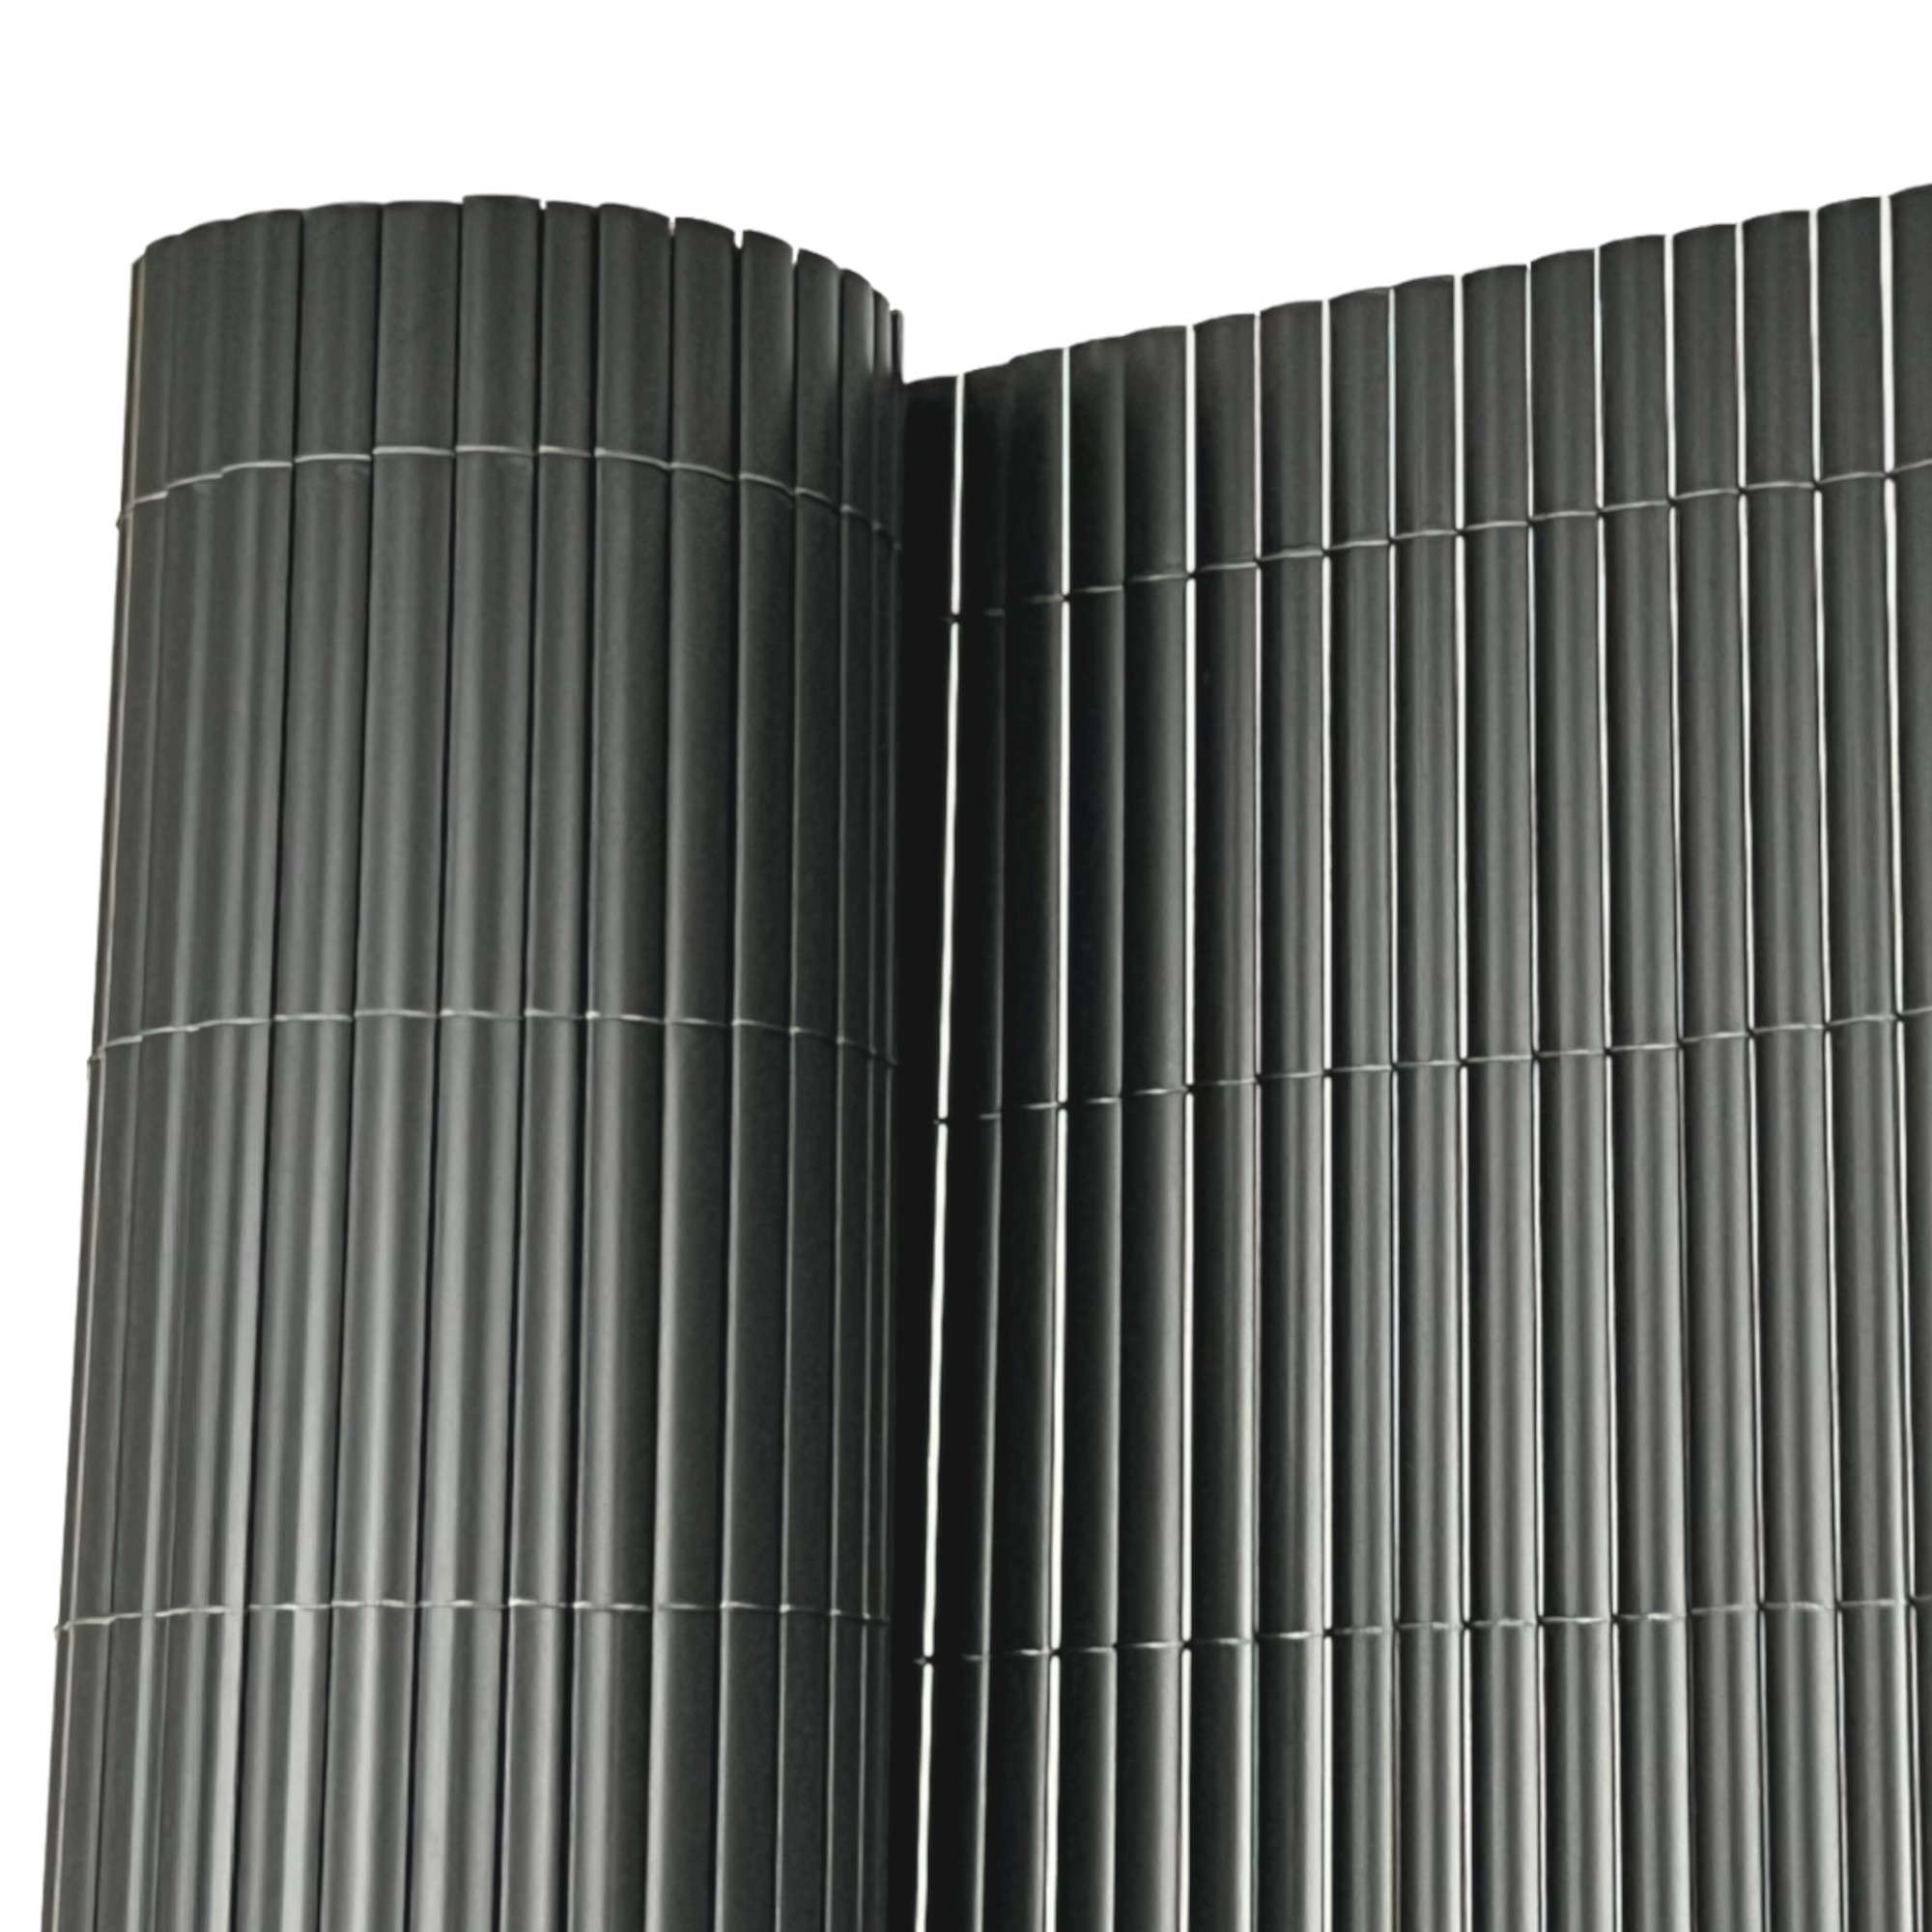 4m x 1.2m PVC Fencing (Grey)